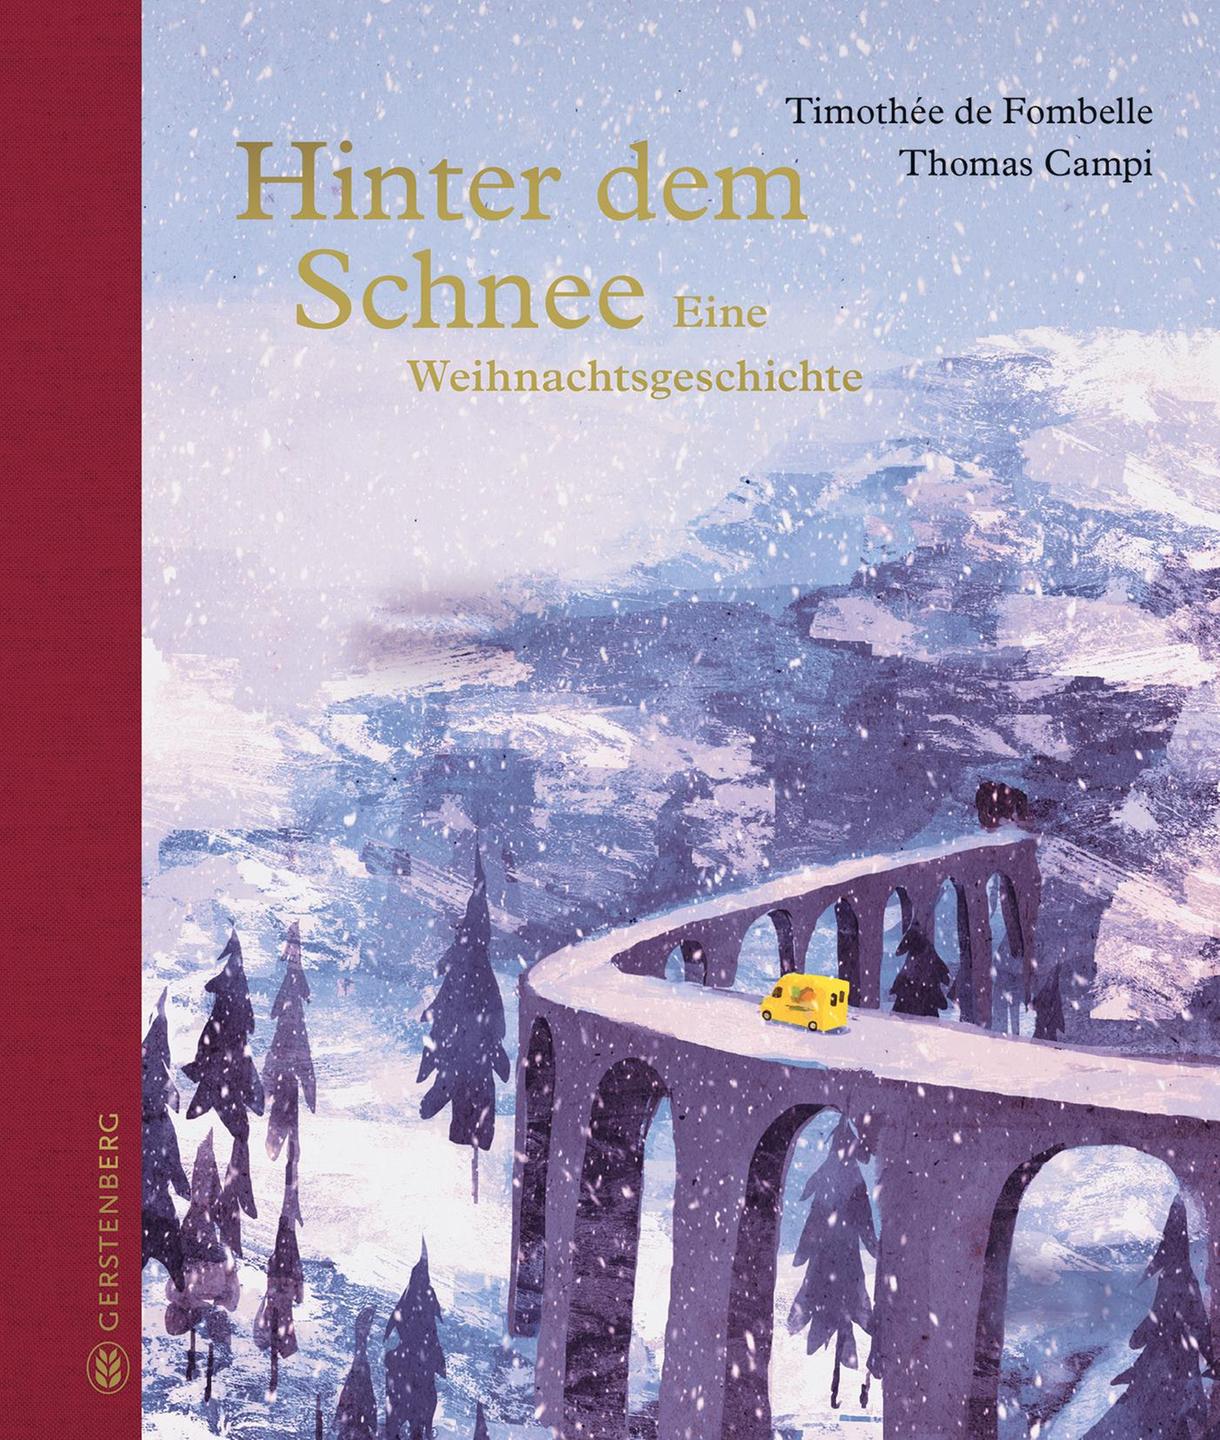 Das Cover des Buches "Hinter dem Schnee. Eine Weihnachtsgeschichte"